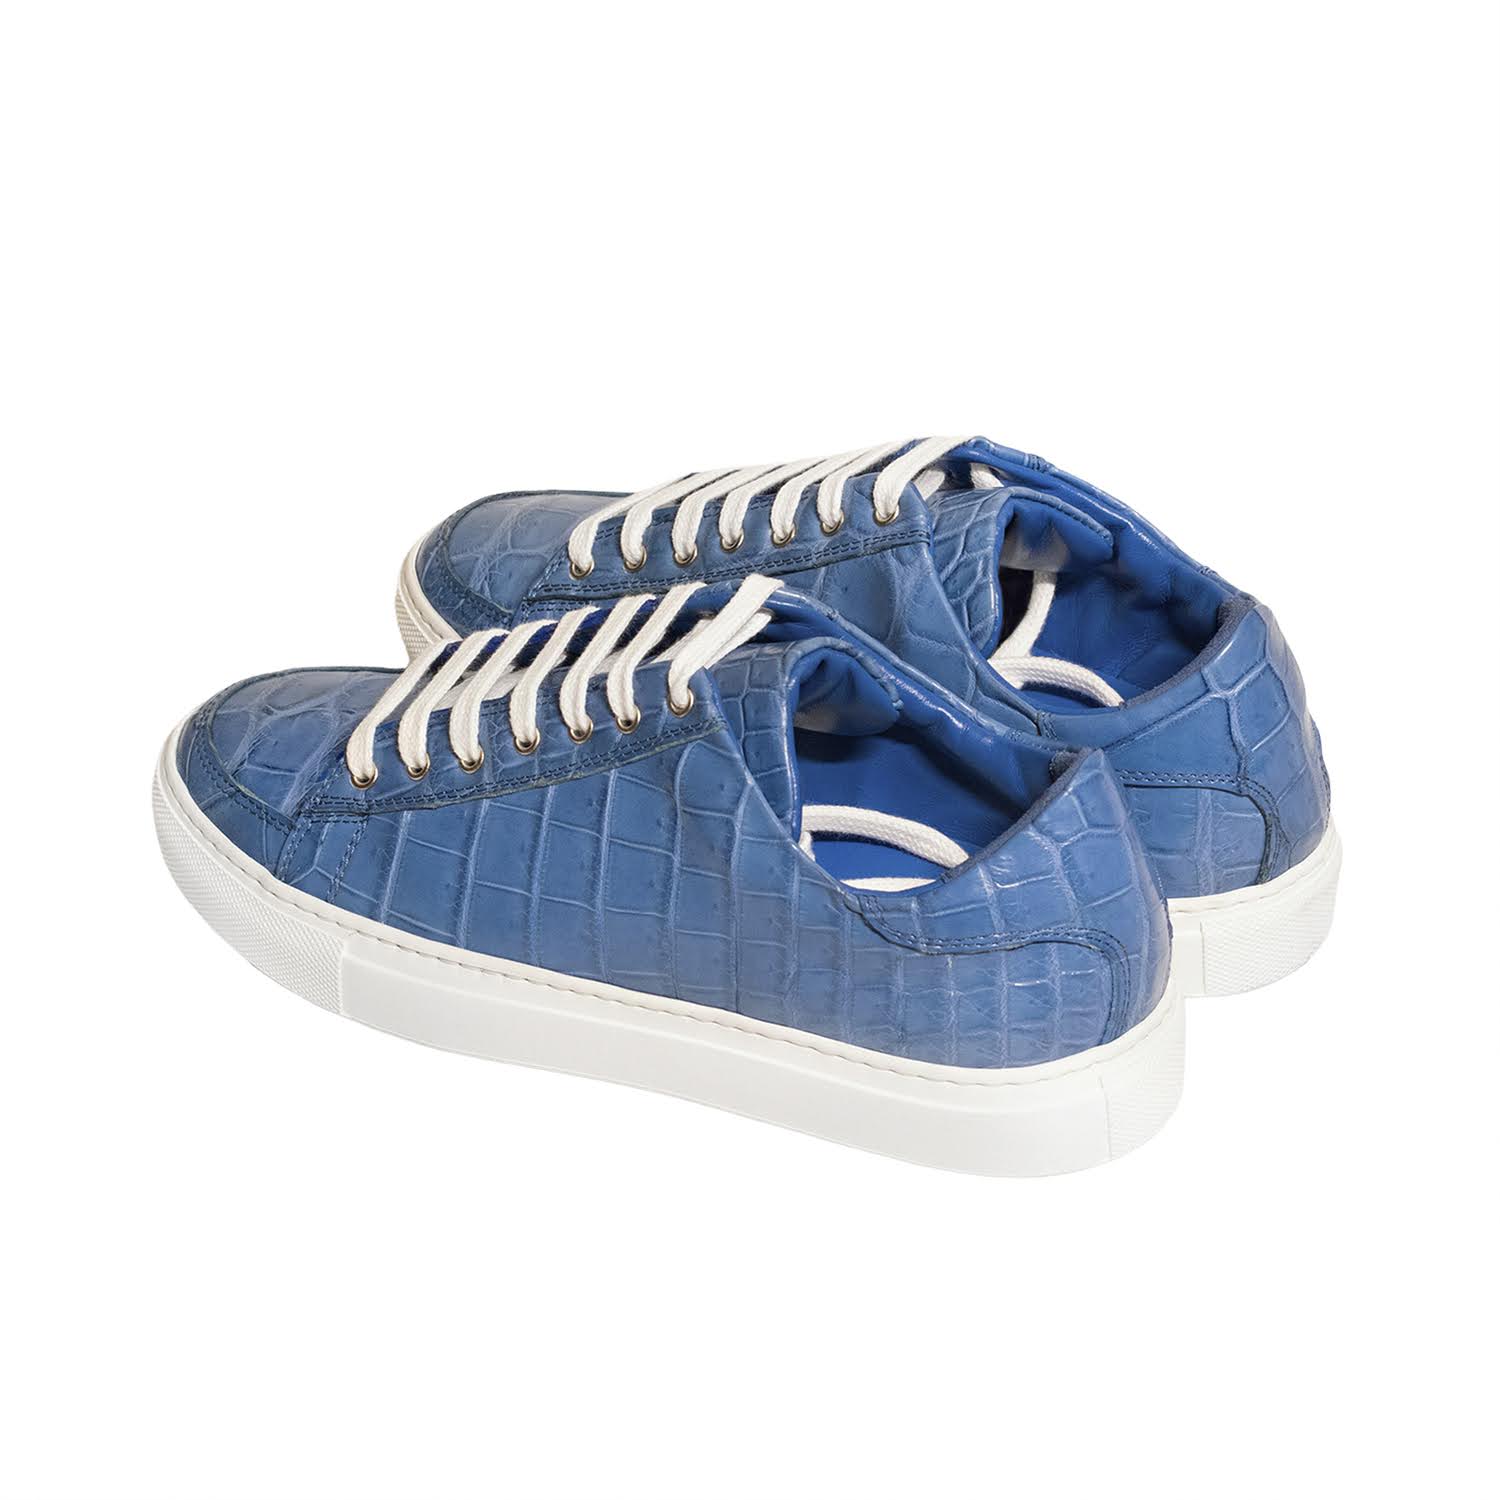 New York Blue Bebe Sneakers